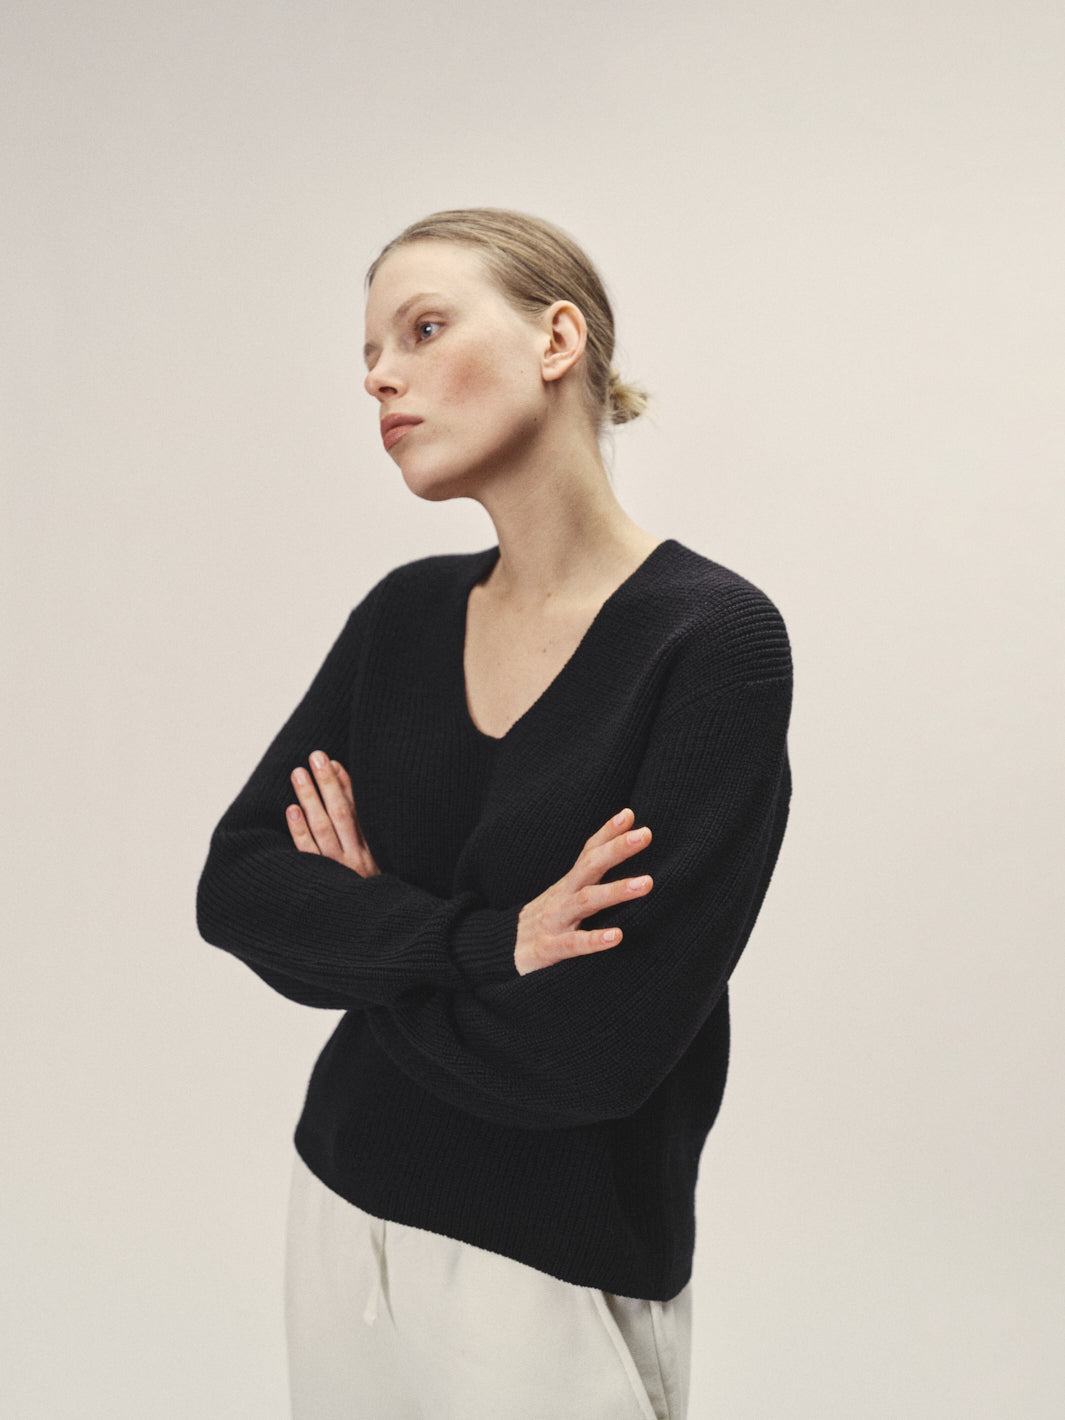 Damen Strickpullover V-Ausschnitt schwarz nachhaltiger Merino Wolle GOTS zertifiziert in Italien gestrickt